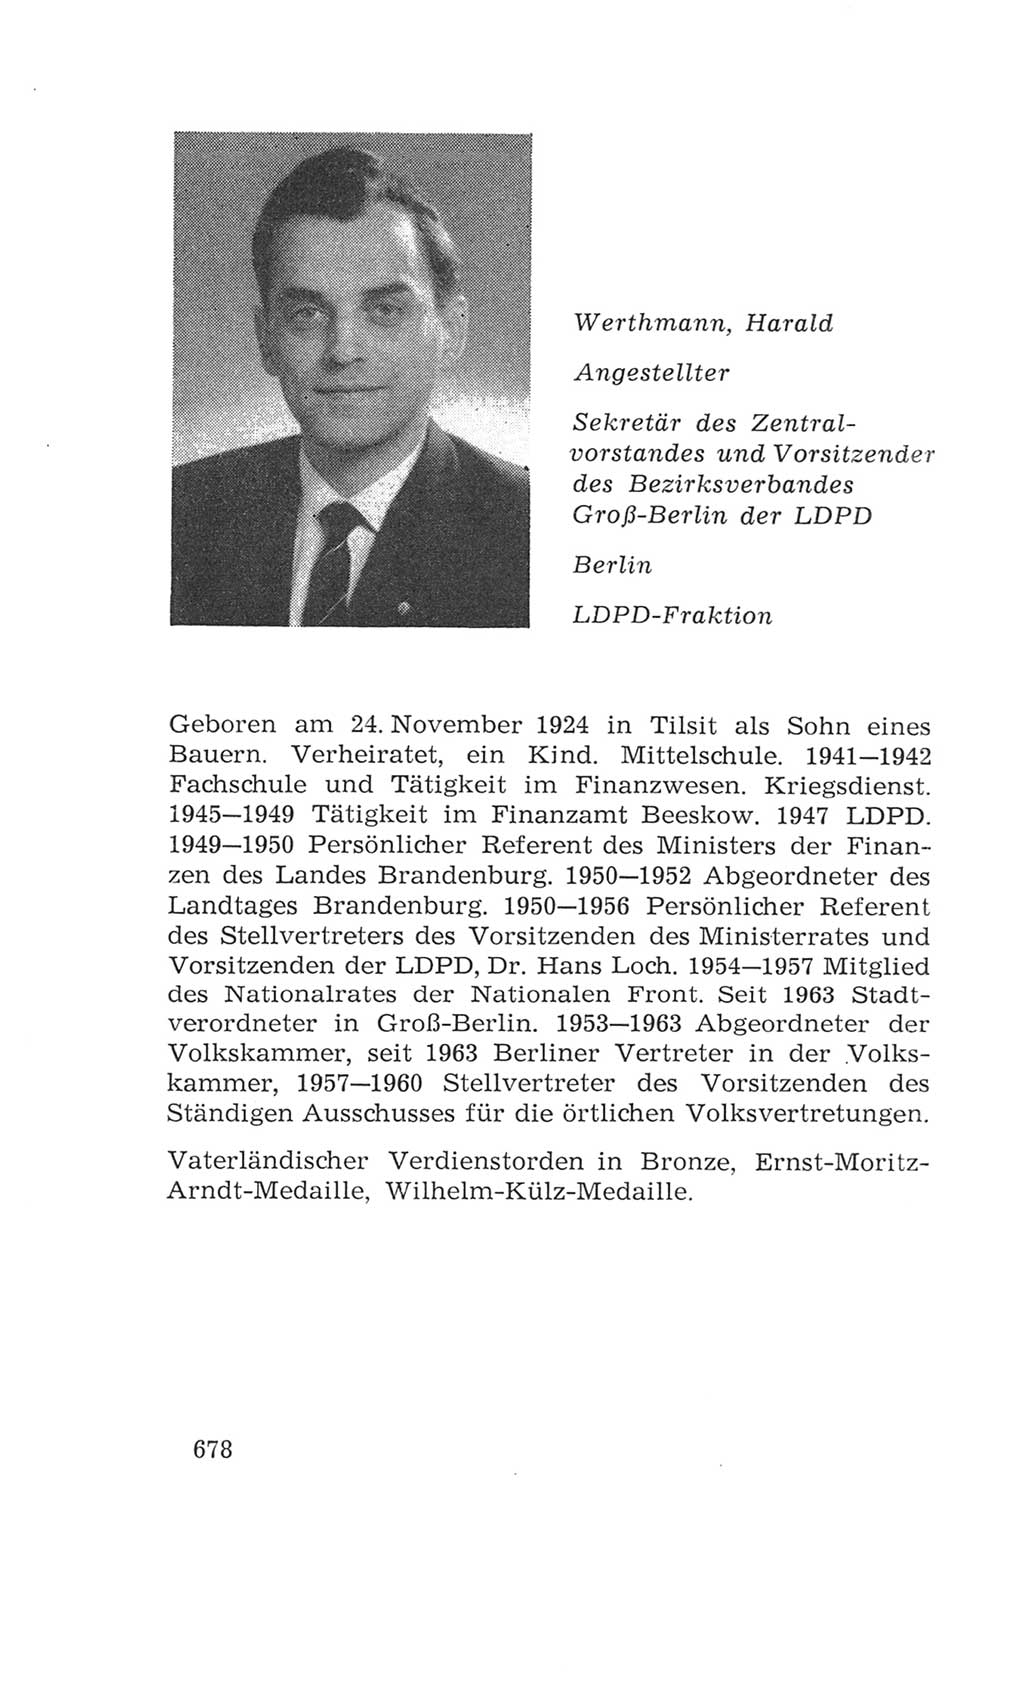 Volkskammer (VK) der Deutschen Demokratischen Republik (DDR), 4. Wahlperiode 1963-1967, Seite 678 (VK. DDR 4. WP. 1963-1967, S. 678)